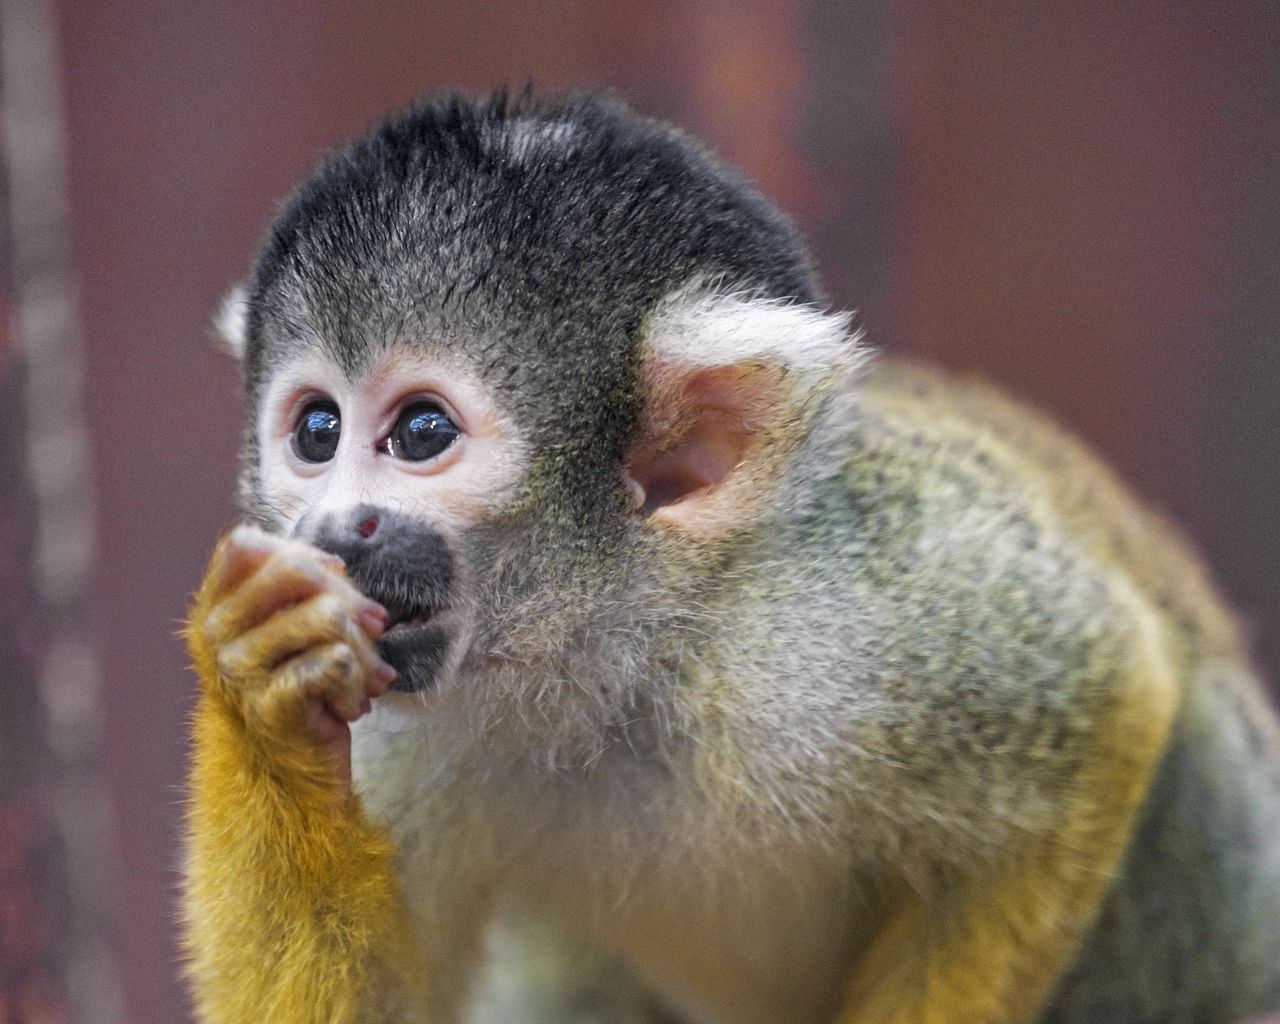 Khỉ được biết đến là loài động vật vui nhộn và thông minh. Những hình ảnh về loài động vật dễ thương này sẽ giúp bạn thư giãn và cảm thấy vui vẻ. Hãy khám phá thế giới đầy màu sắc của những chú khỉ thông minh và đáng yêu.